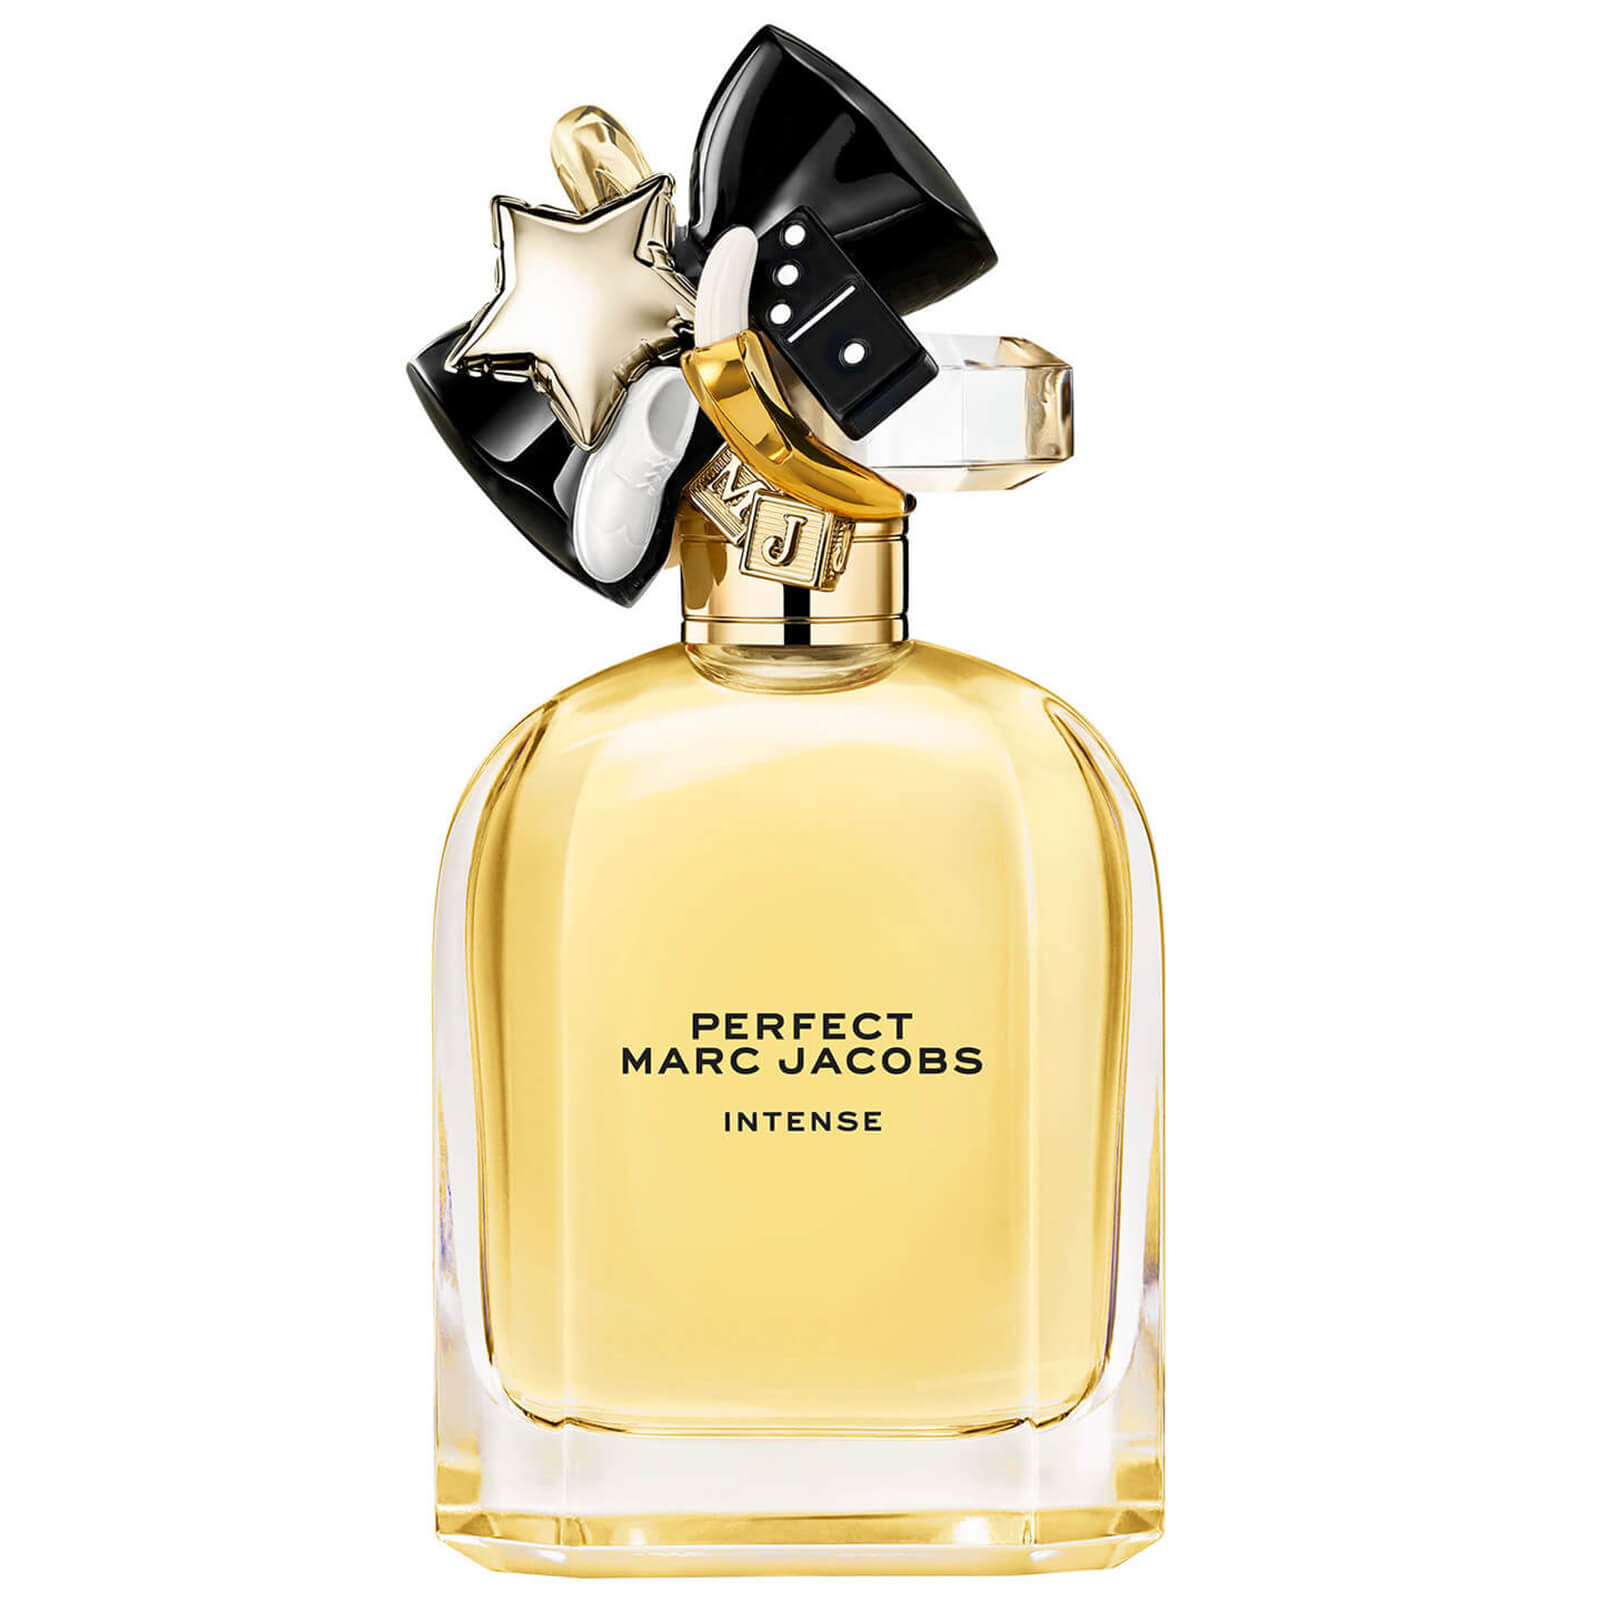 Image of Marc Jacobs Perfect Intense Eau de Parfum Profumo 100ml